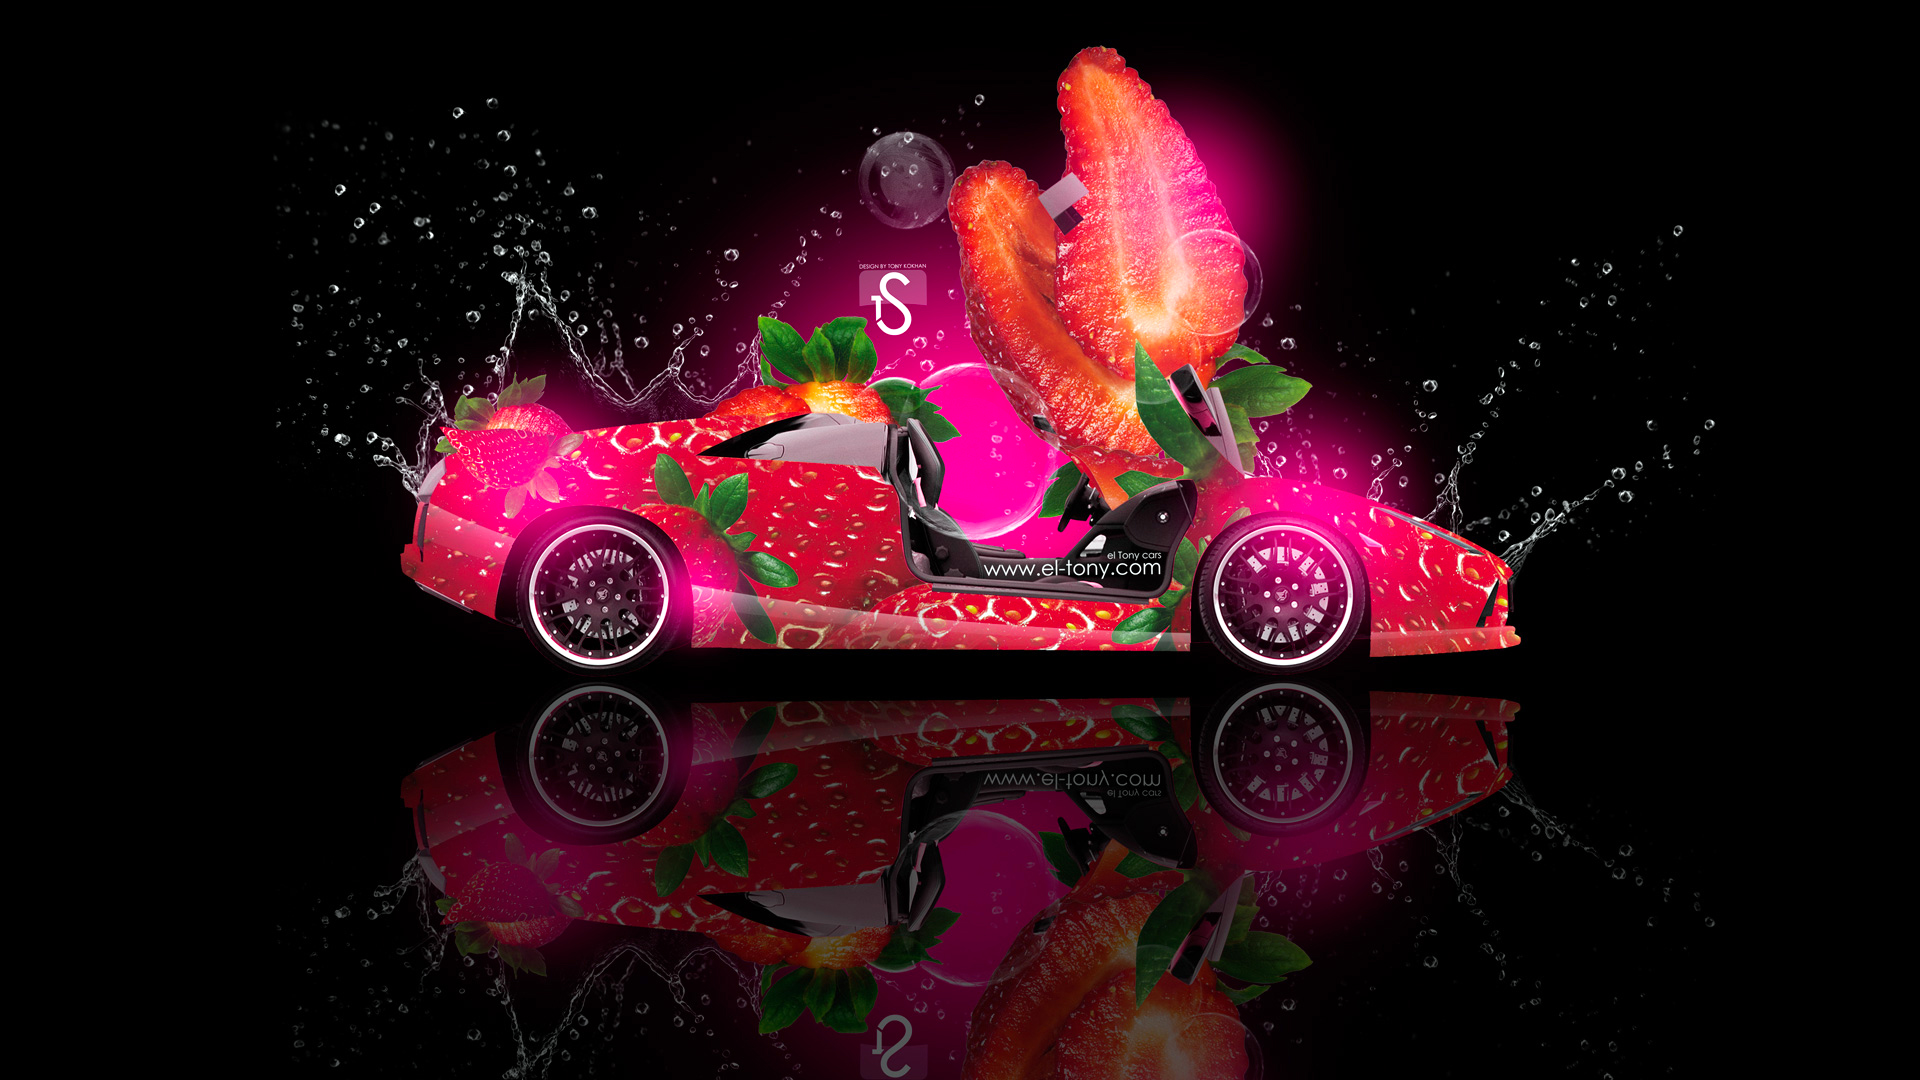 lamborghini-murcielago-fantasy-strawberry-car-2013-design-by-tony-kokhan-www_el-tony_com.jpg